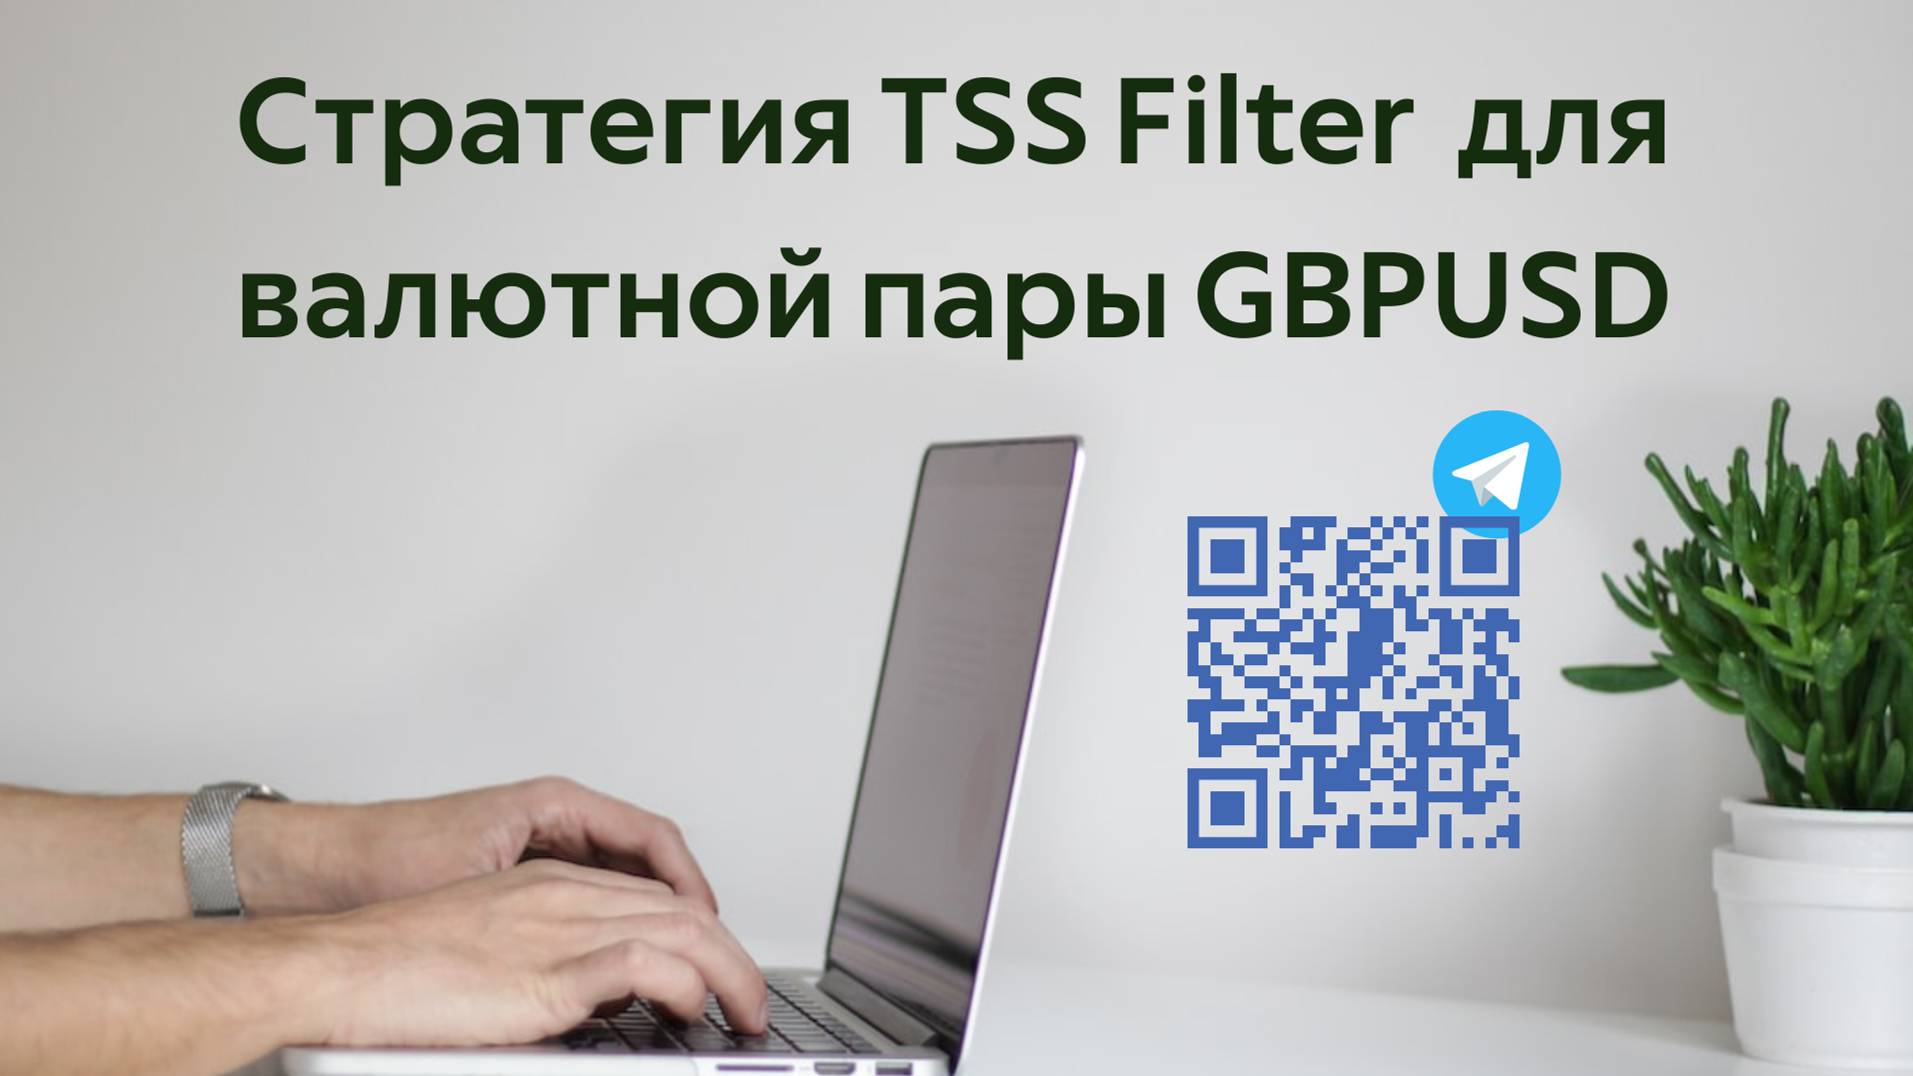 Форекс стратегия TSS Filter для валютной пары GBPUSD